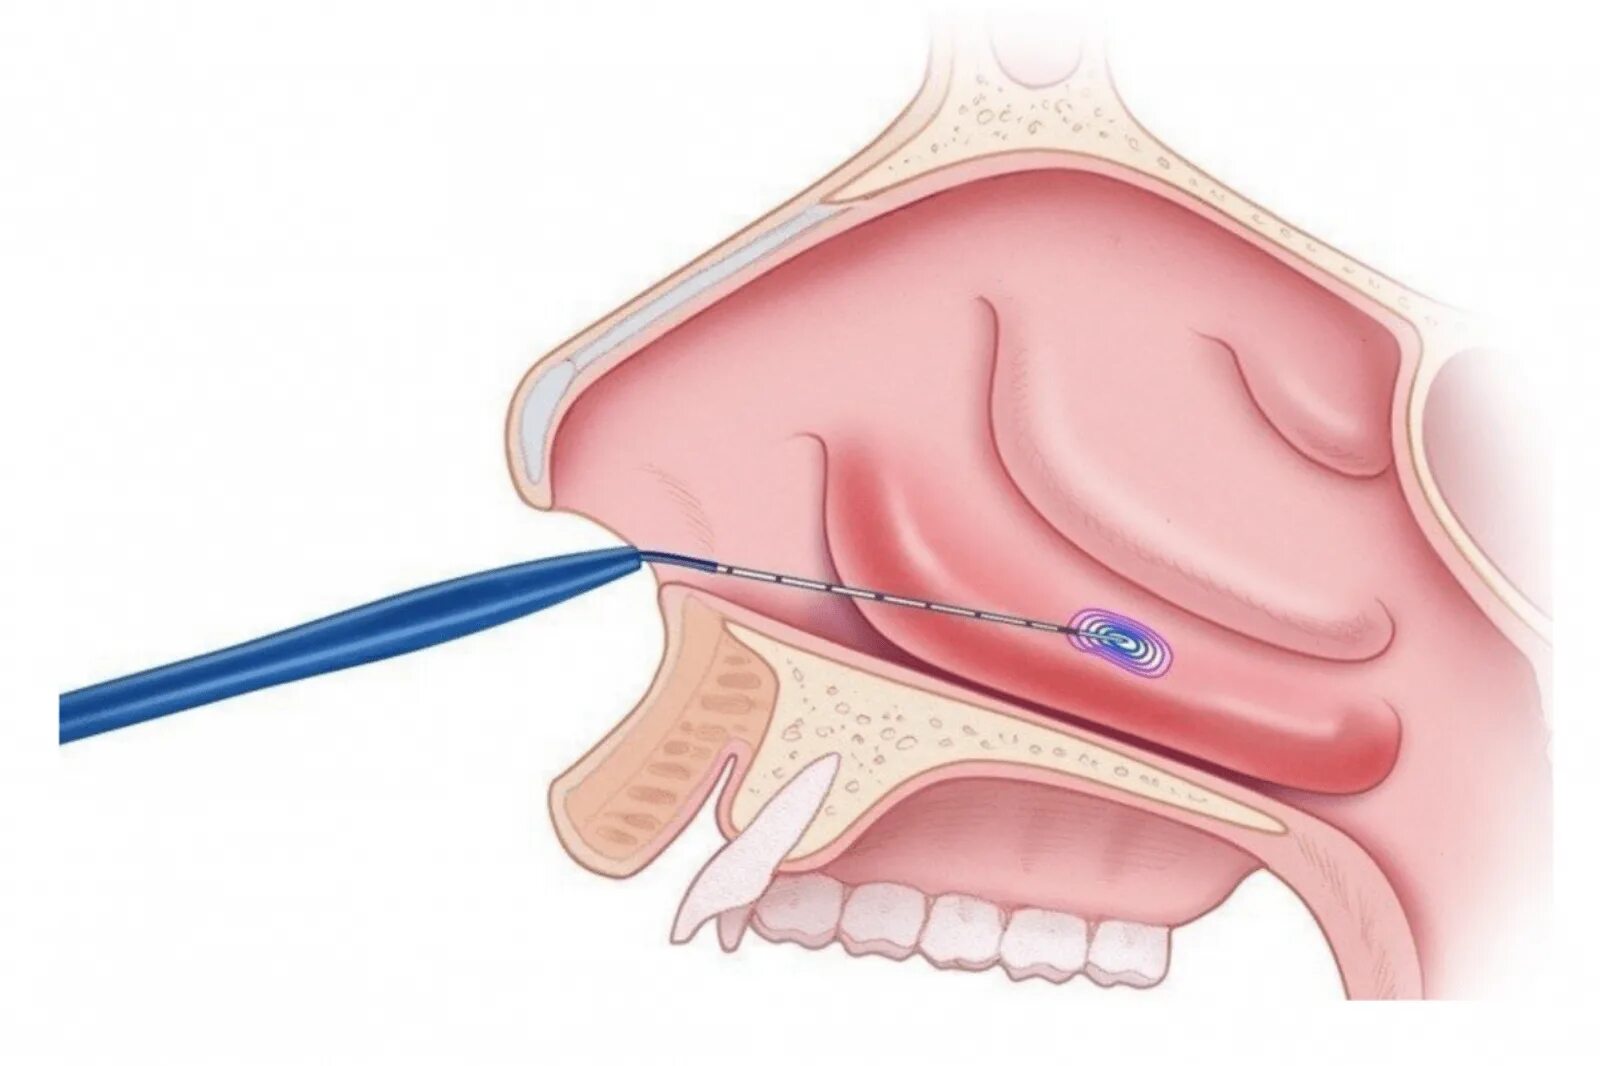 ЛОР операция вазотомия. Гипертрофический ринит ринит. Конхотомия нижних носовых раковин. Радиоволновая конхотомия. Нос в другую сторону